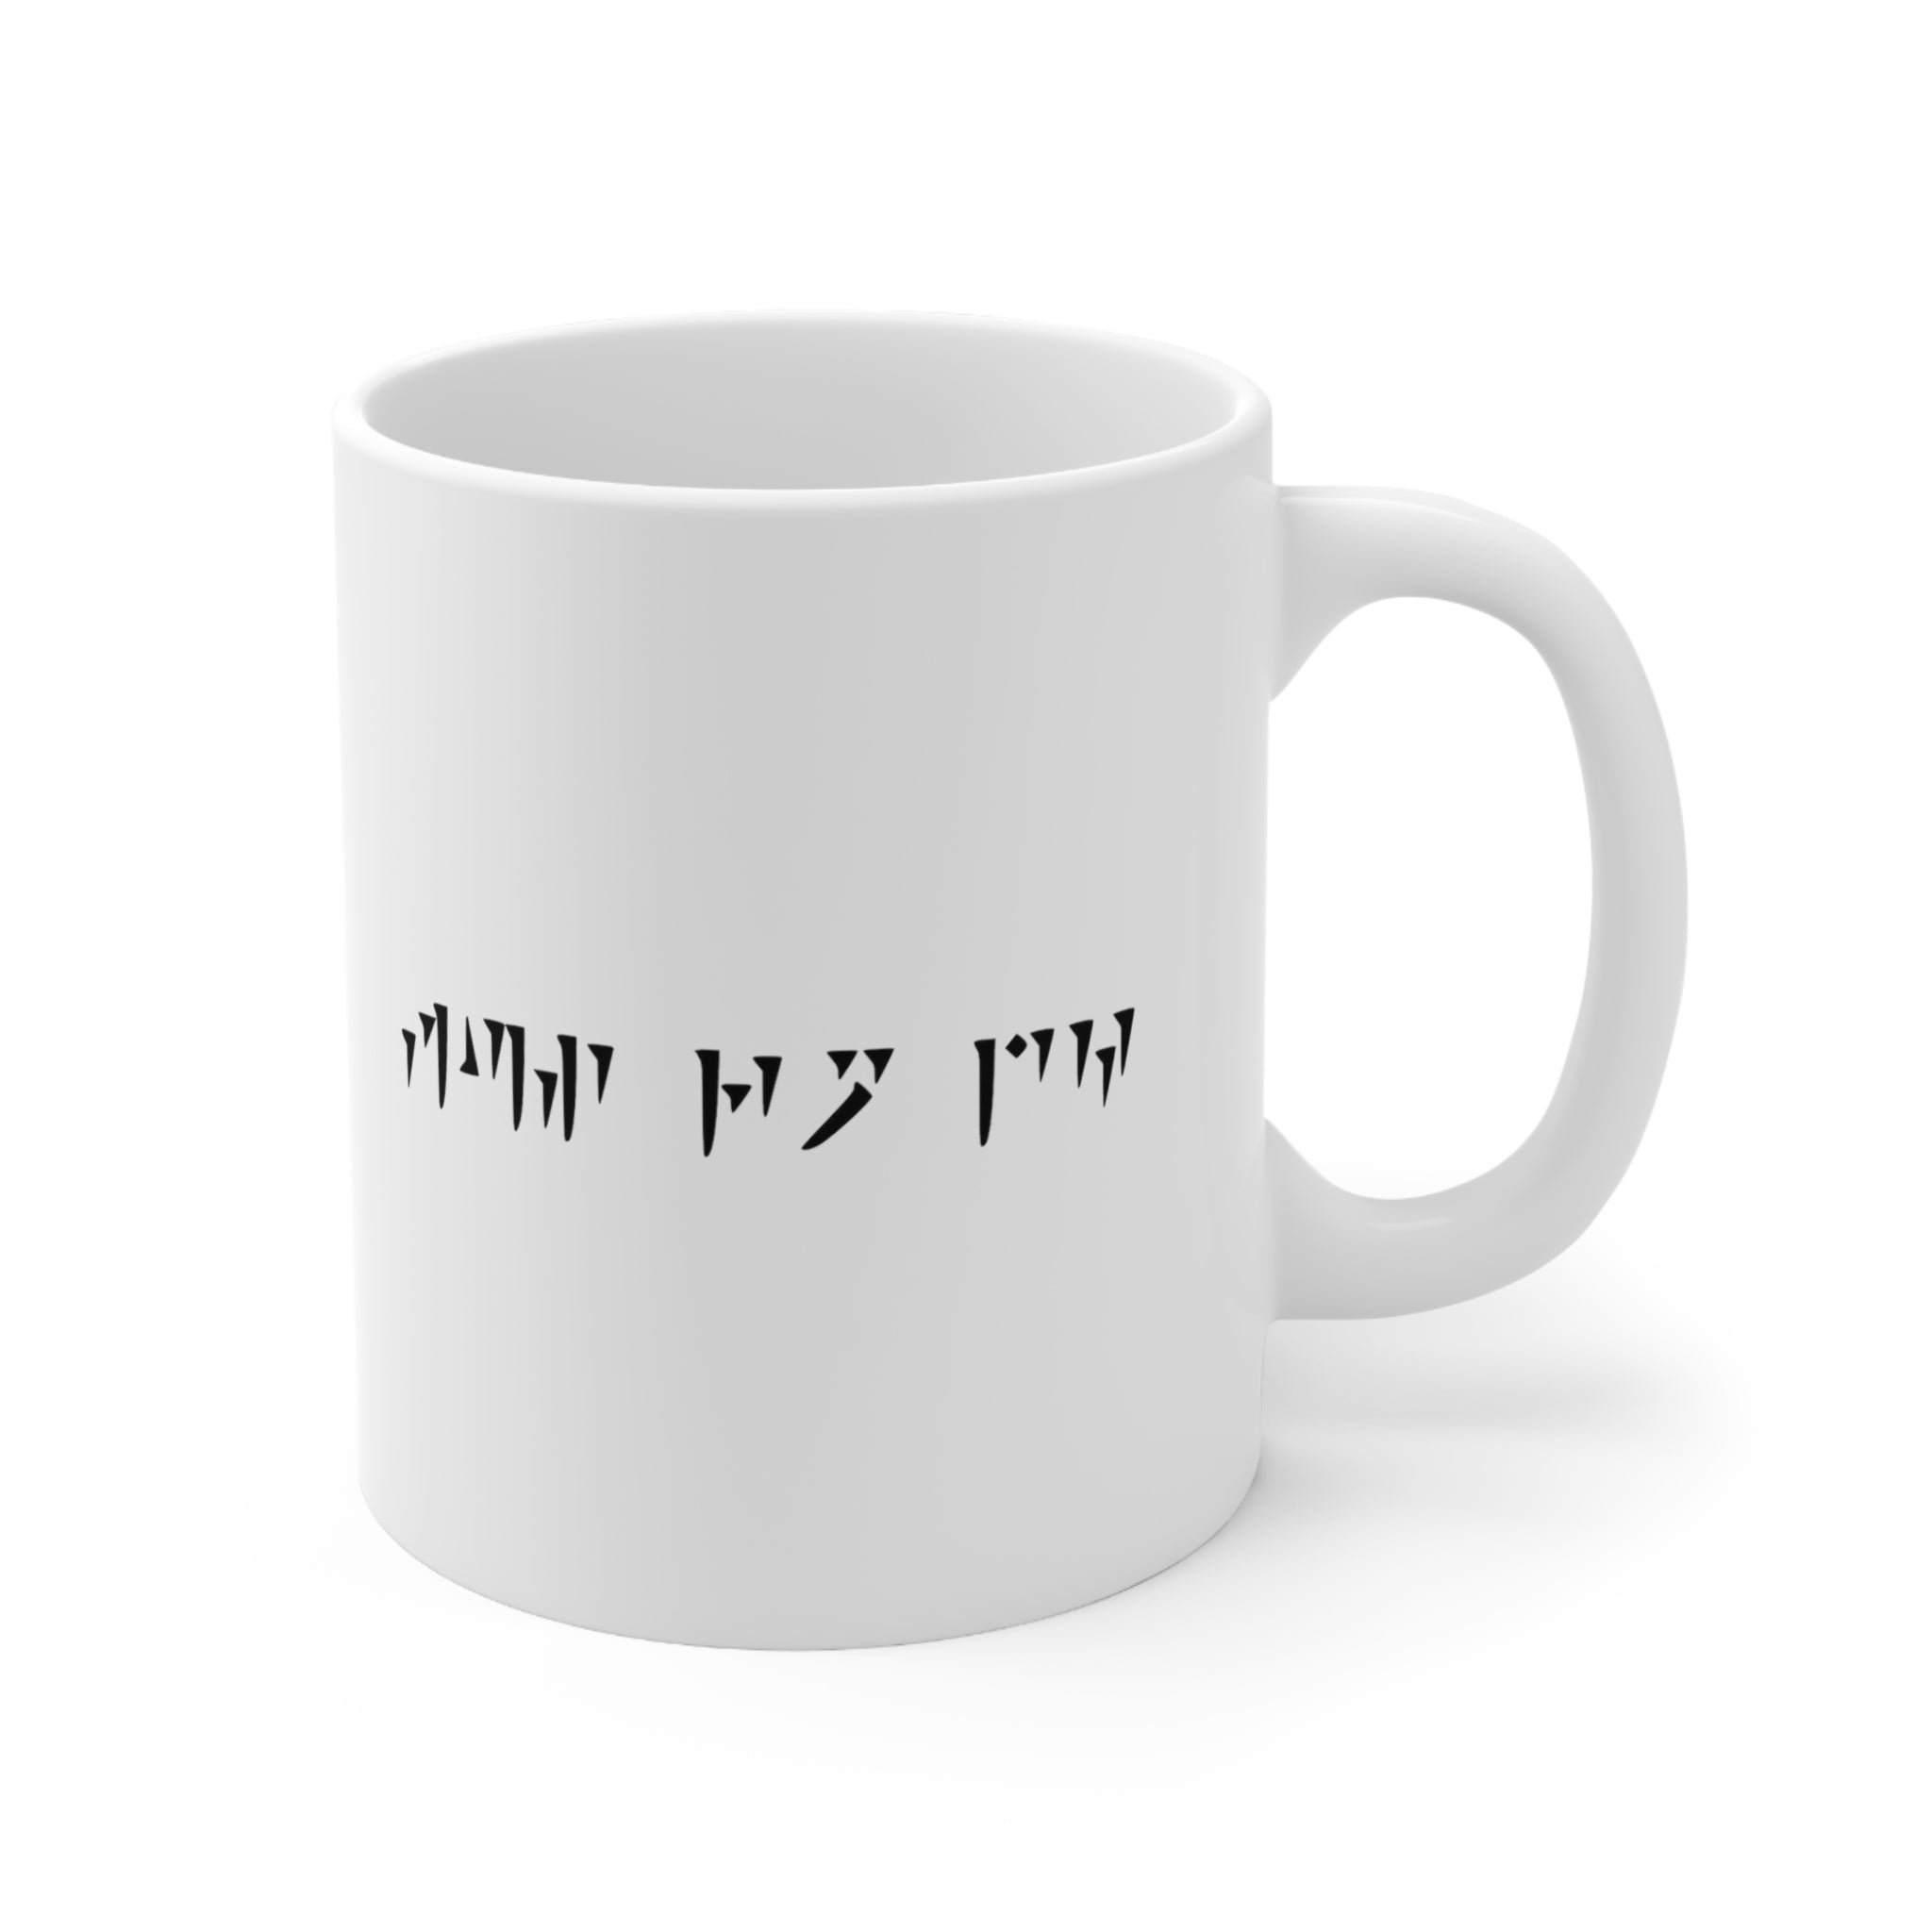 Fus Ro Dah Mug 11oz - Gamer Mug, Gift for Gamer